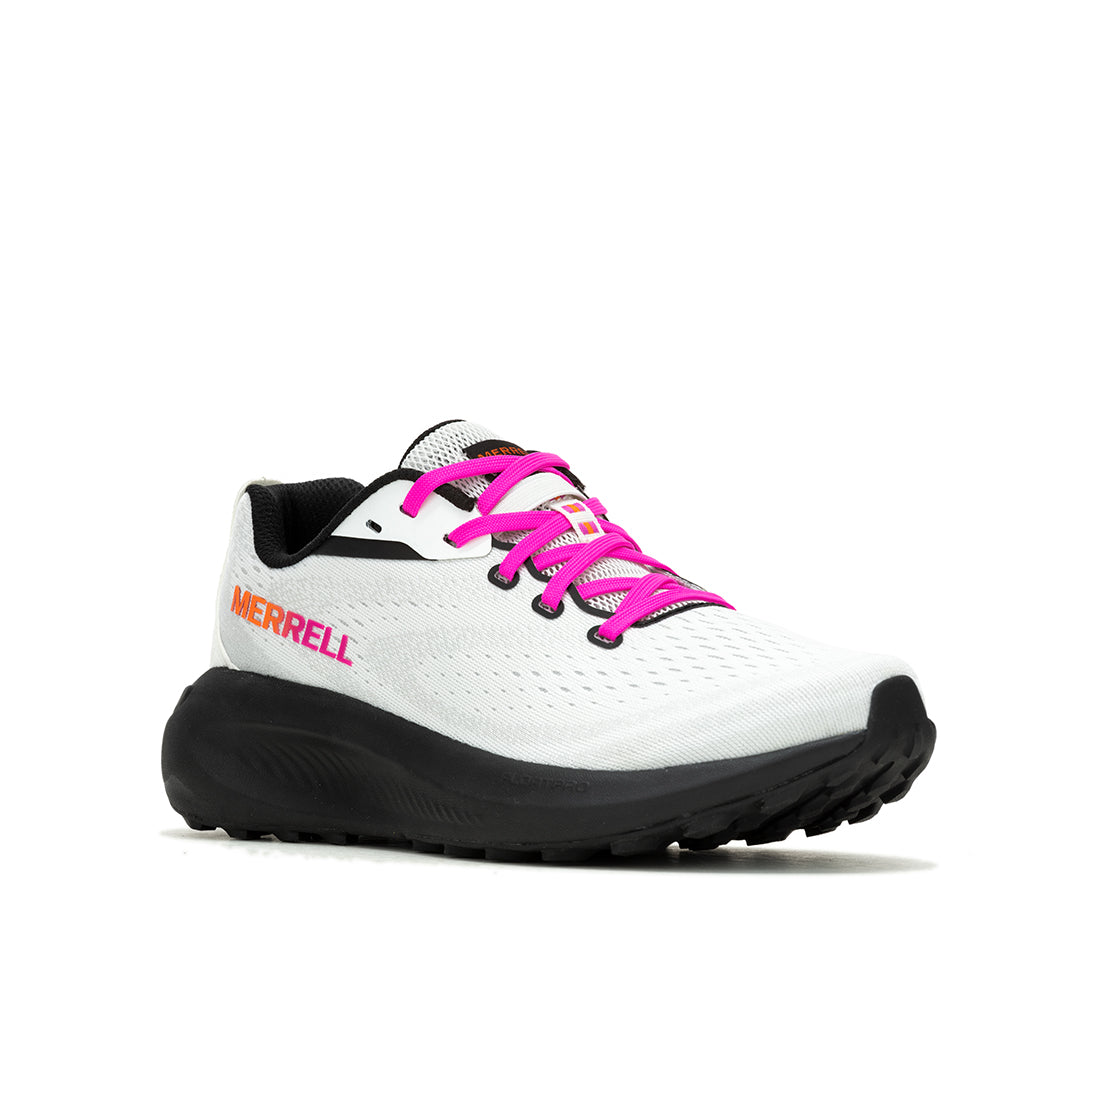 Morphlite – White/Multi Womens Trail Running Shoes - 0